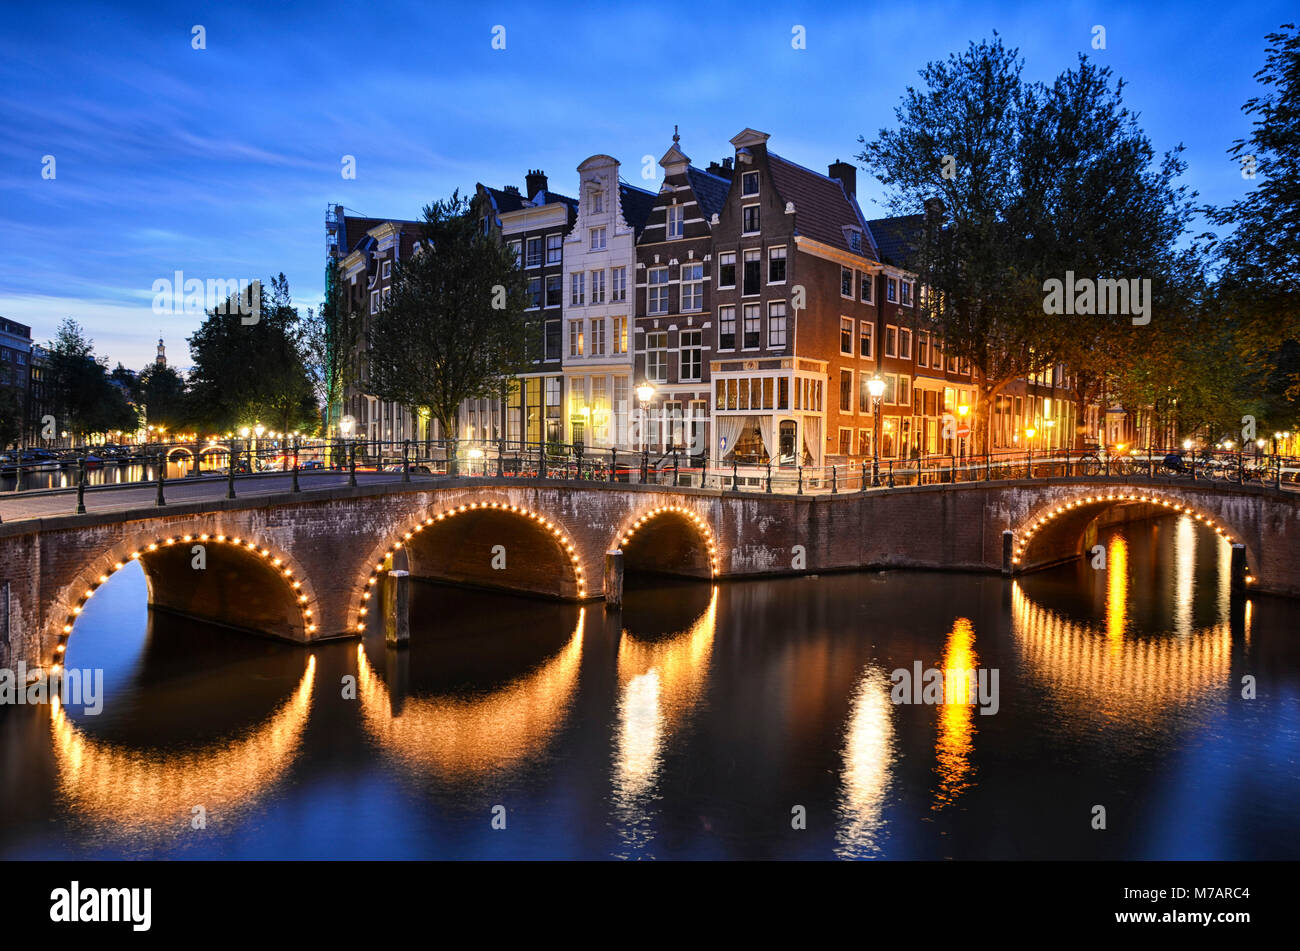 Escena nocturna en un canal, con edificios tradicionales y un puente de arco en Ámsterdam, Países Bajos Foto de stock